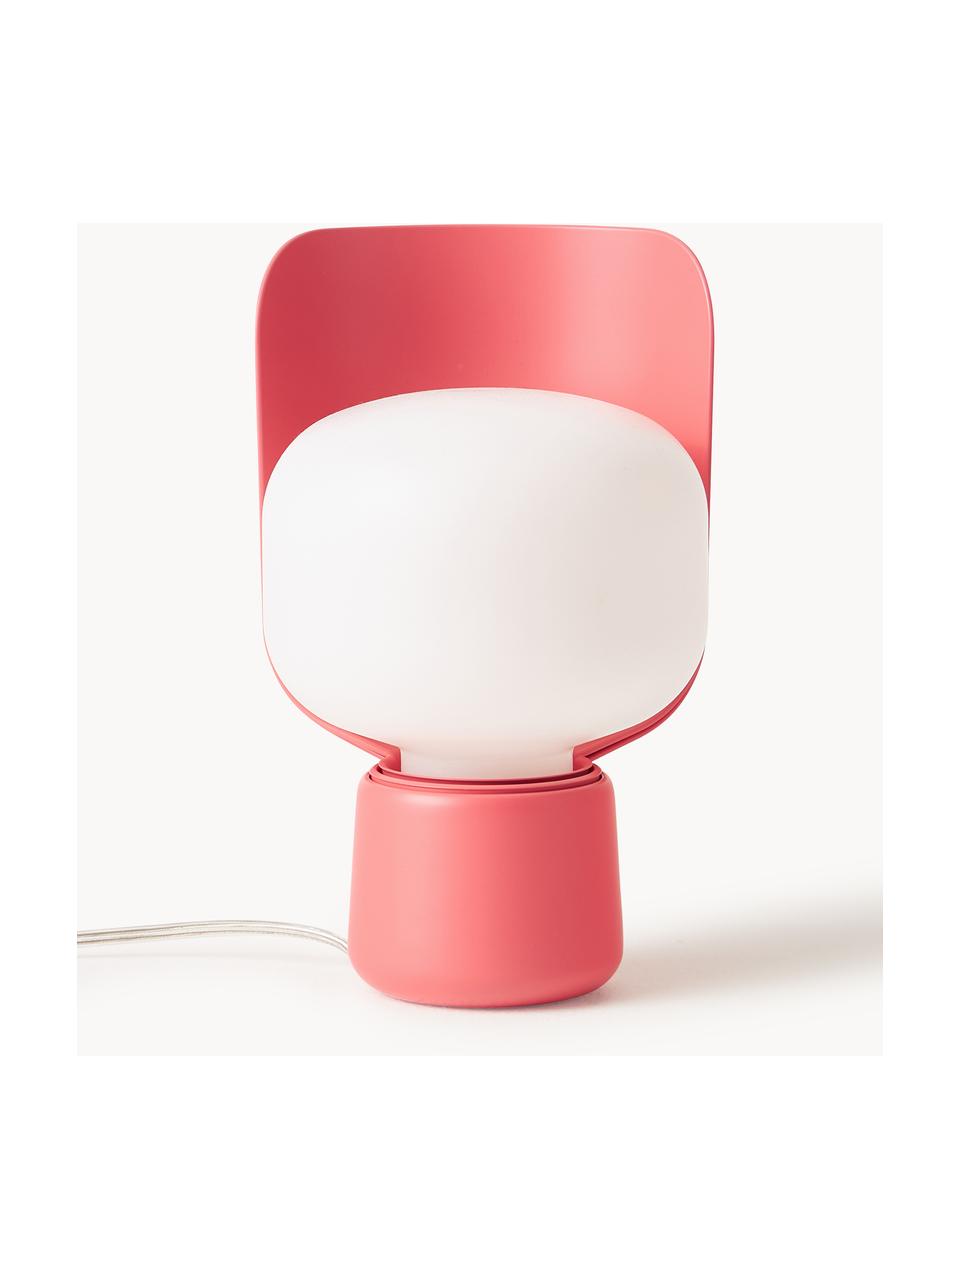 Malá stolní lampa Blom, ručně vyrobená, Bílá, korálově červená, Ø 15 cm, V 24 cm